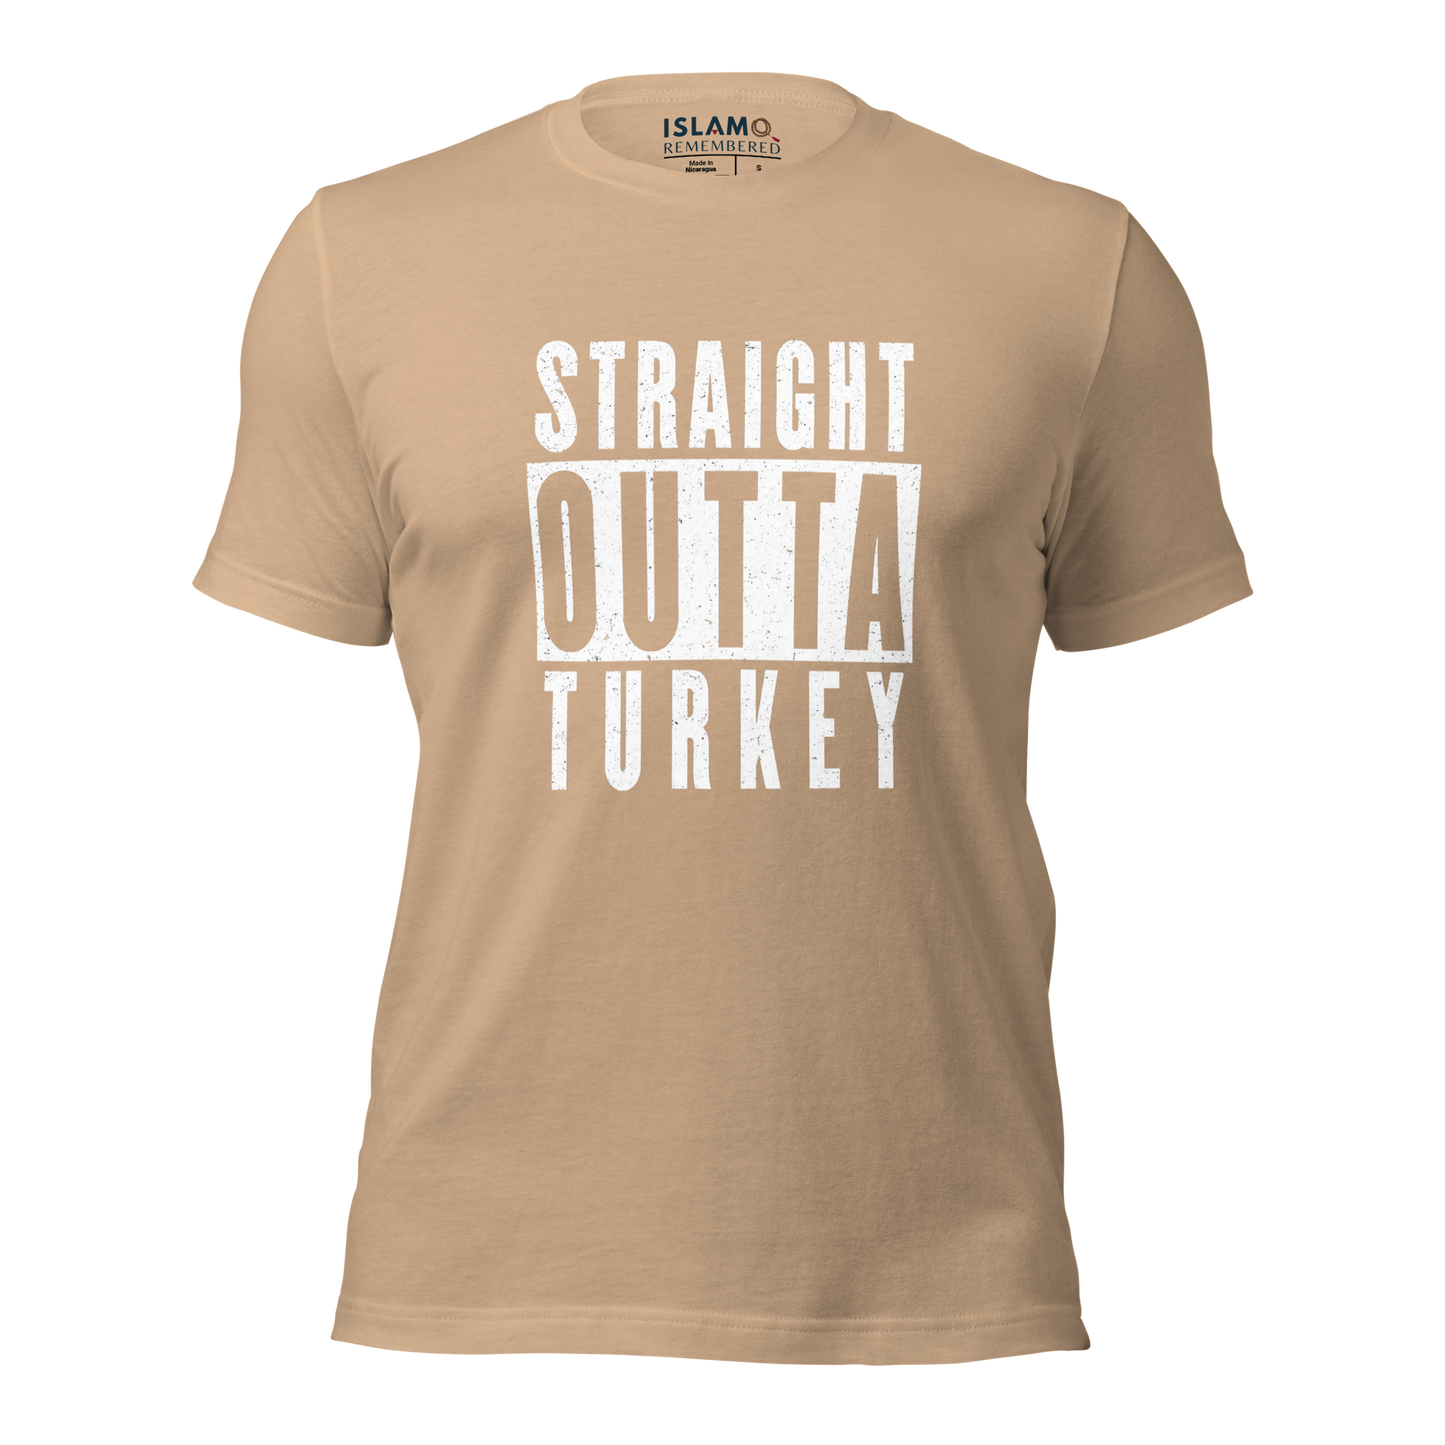 ADULT T-Shirt - STRAIGHT OUTTA TURKEY